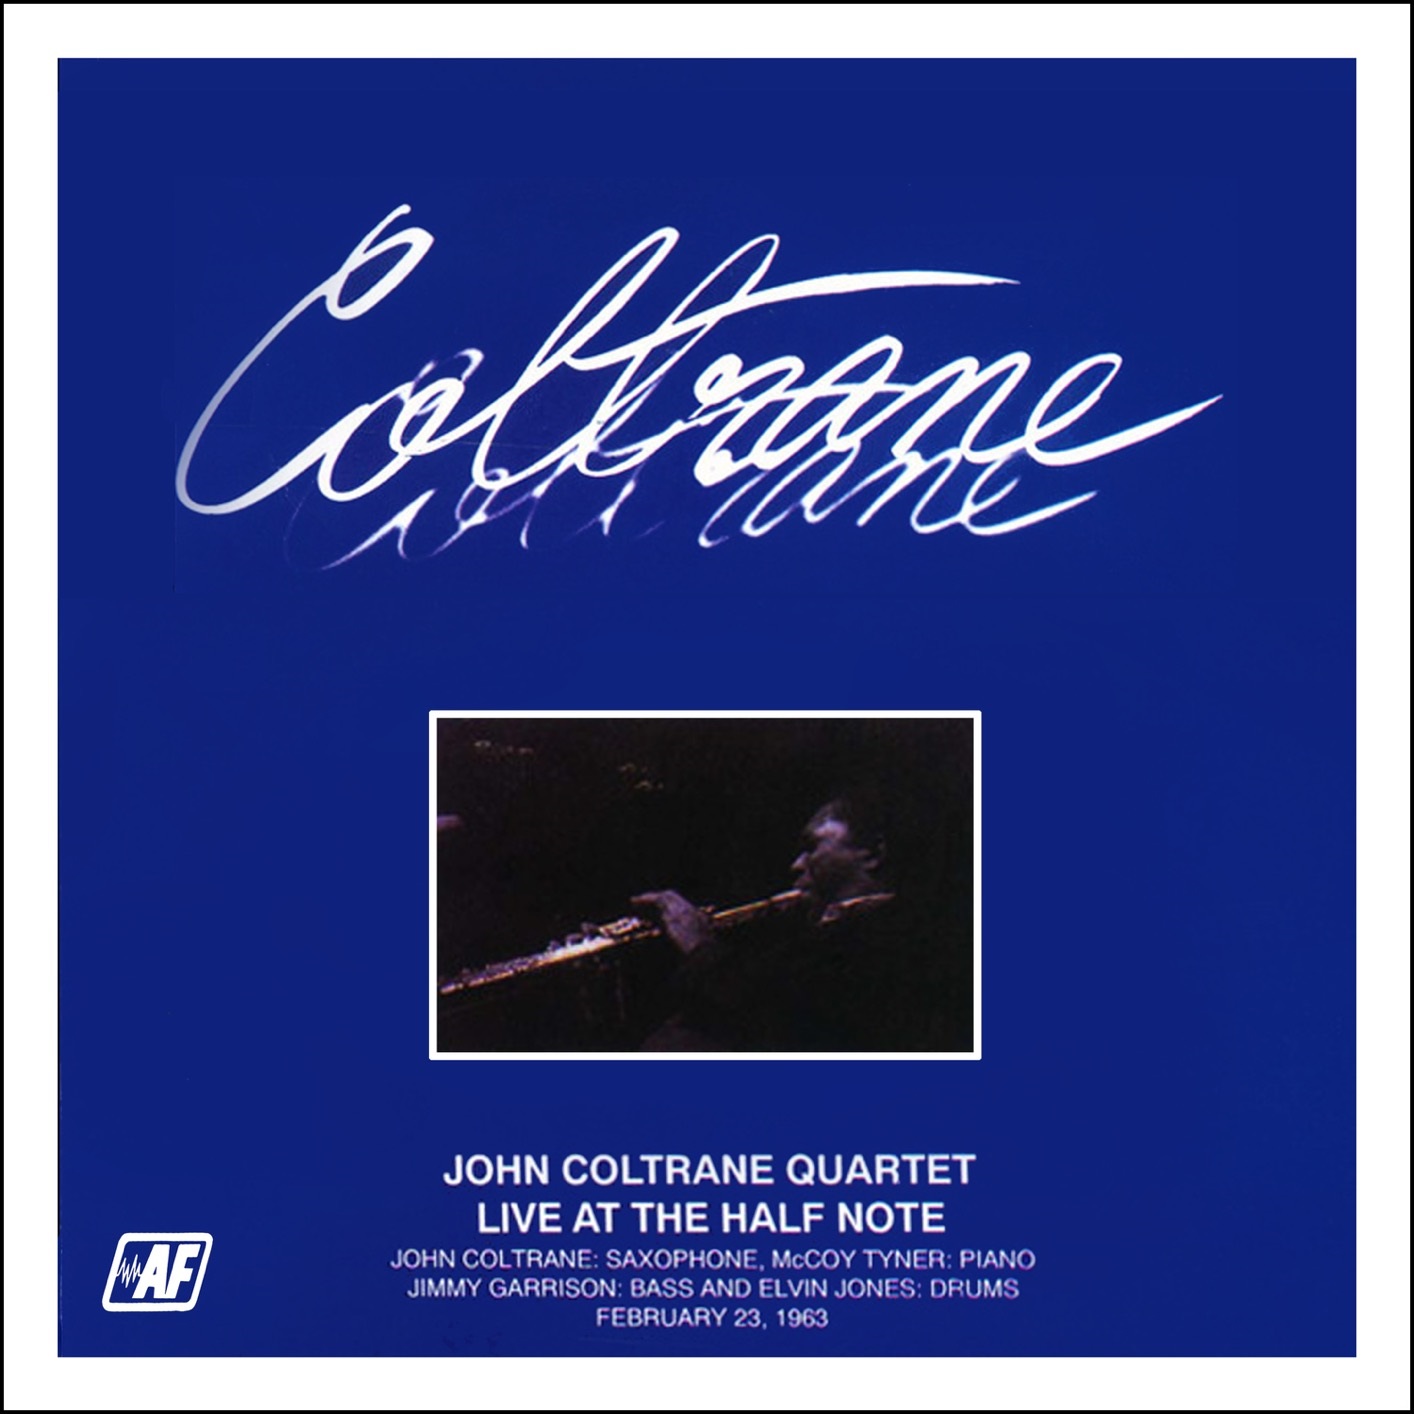 John Coltrane Quartet - Live at the Half Note February 23, 1963 (Remastered) (1984/2020) [FLAC 24bit/96kHz]